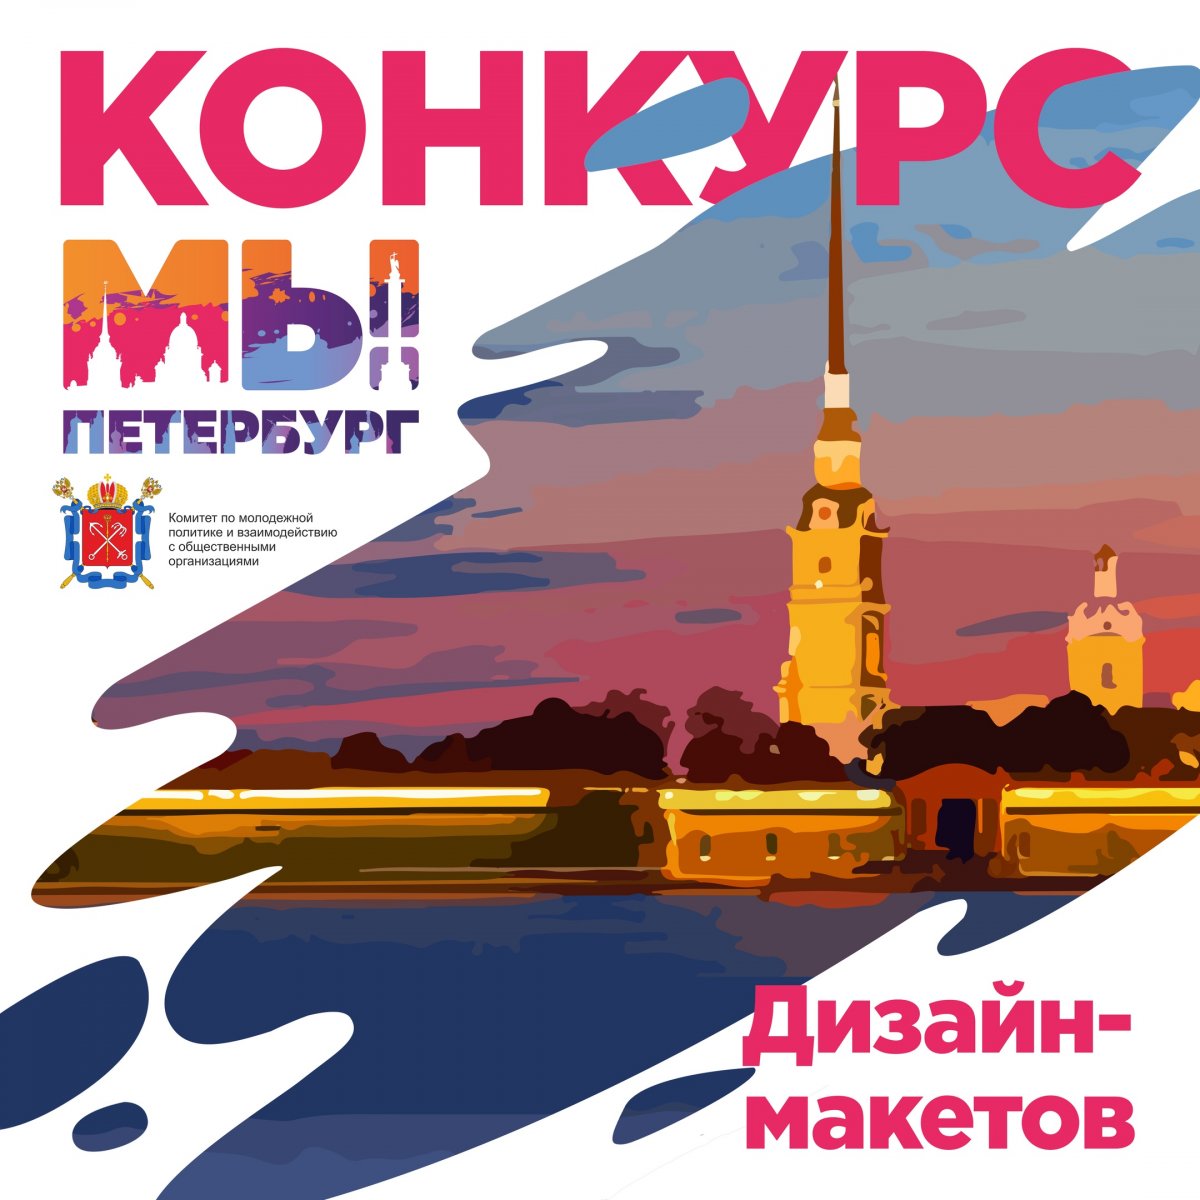 Комитет по молодежной политике и взаимодействию с общественными организациями проводит Конкурс дизайн-макетов среди молодежи по тематике поддержания гражданского мира и общественного согласия в Санкт-Петербурге